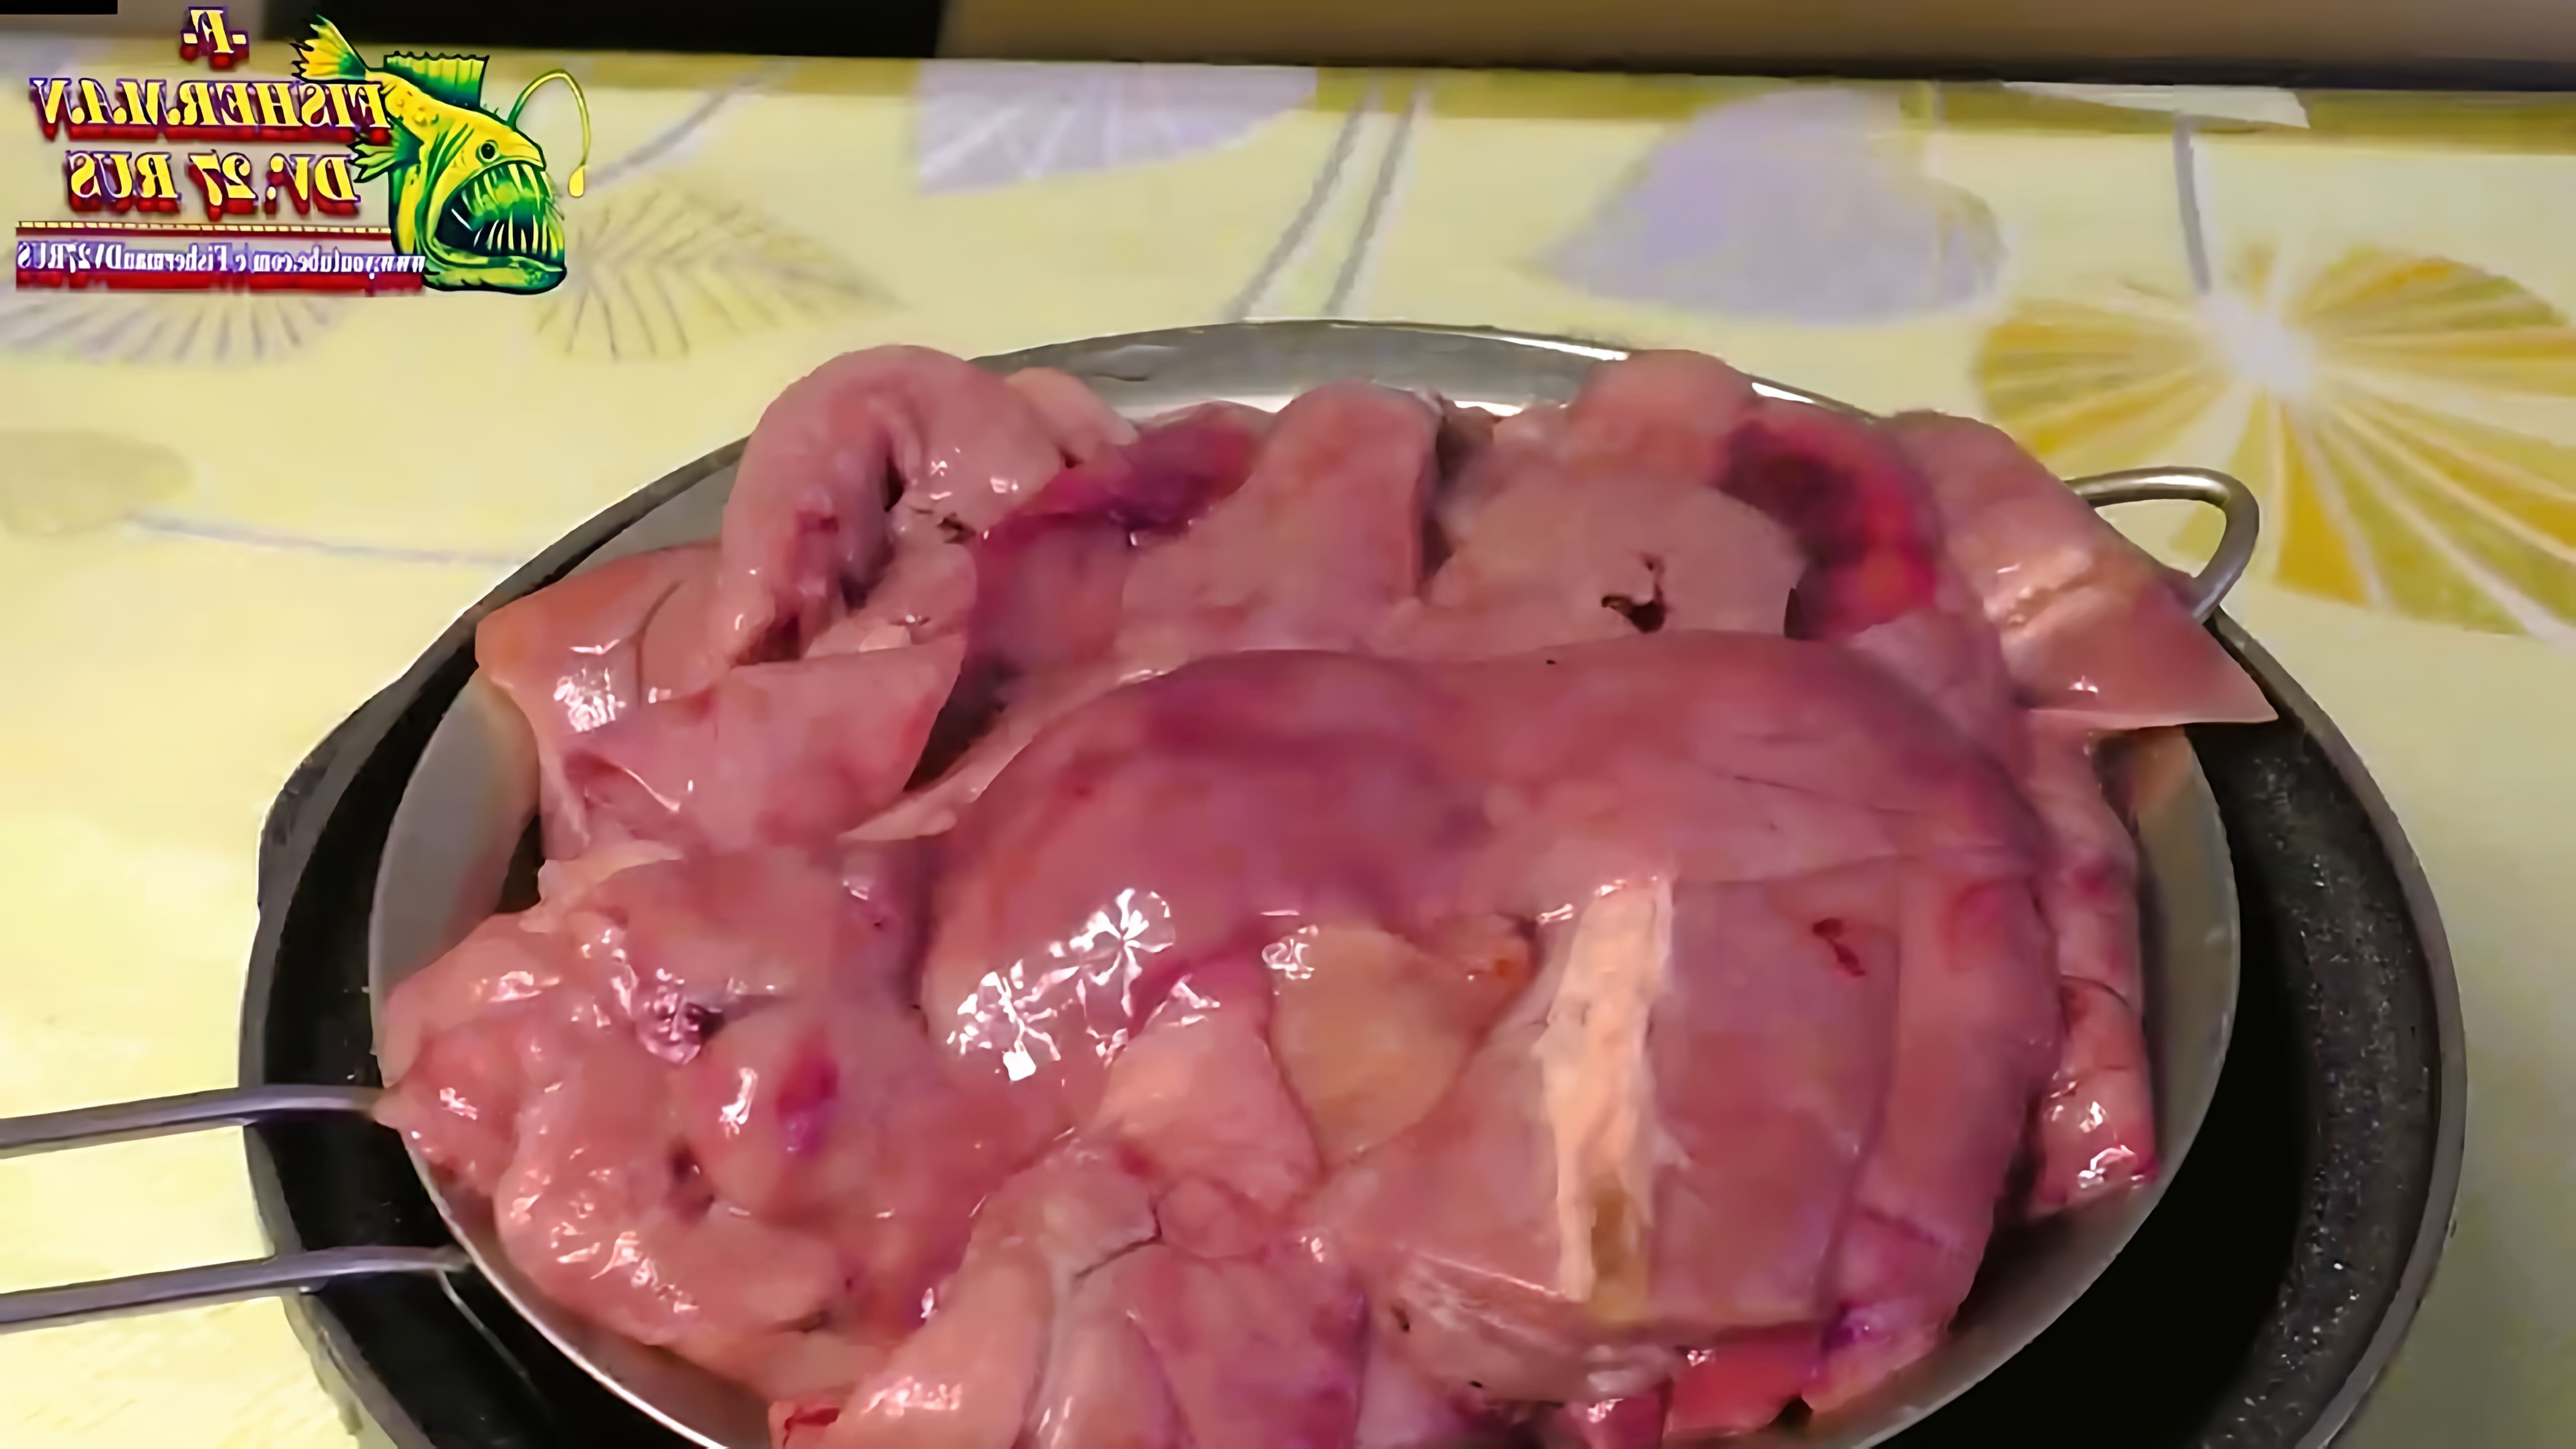 В этом видео демонстрируется процесс приготовления жареной печени щуки в сухарях